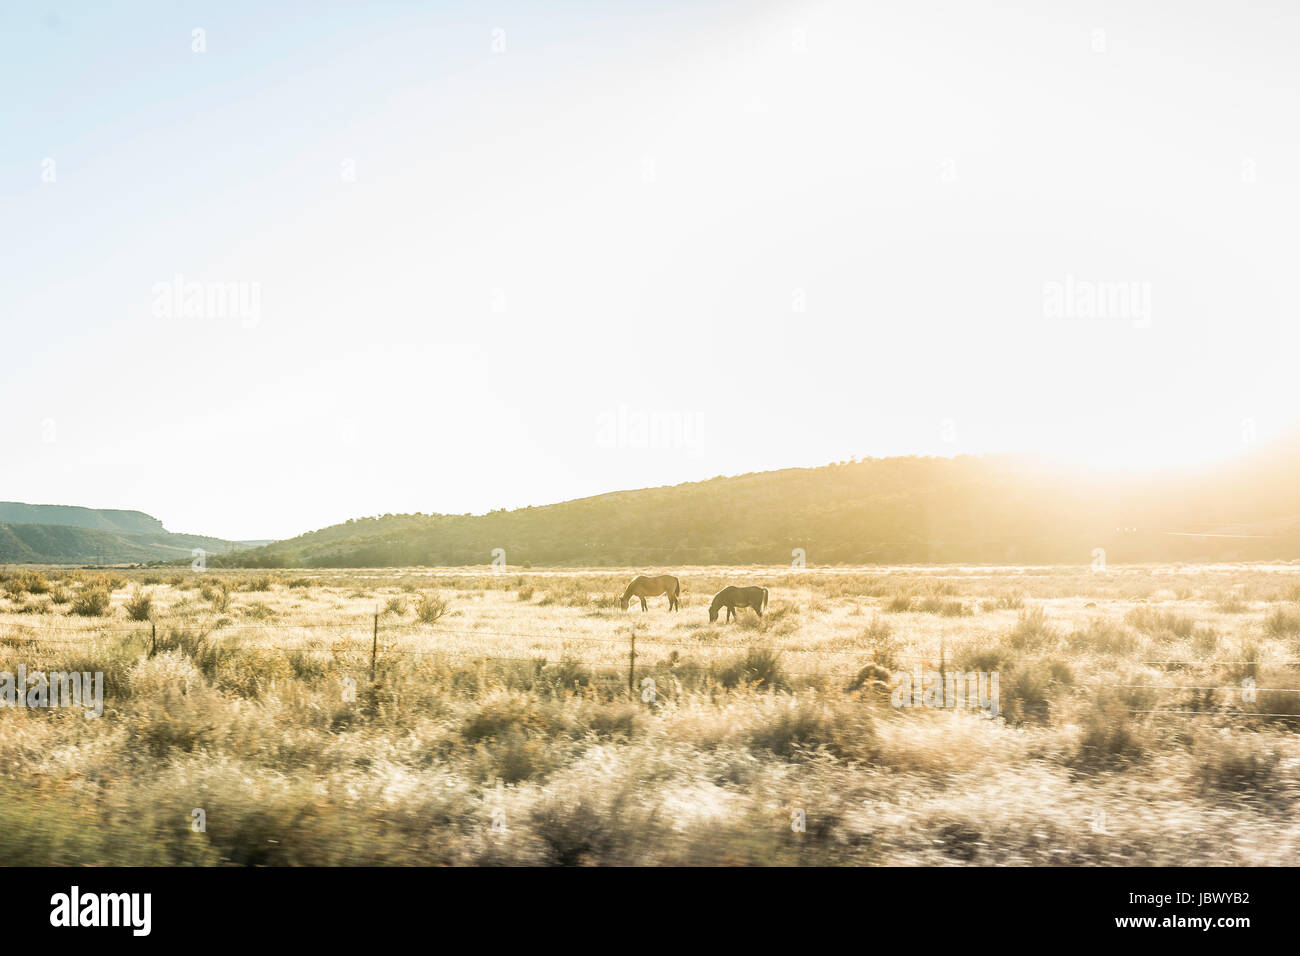 Les chevaux au pâturage dans un paysage ensoleillé, Arizona, USA Banque D'Images